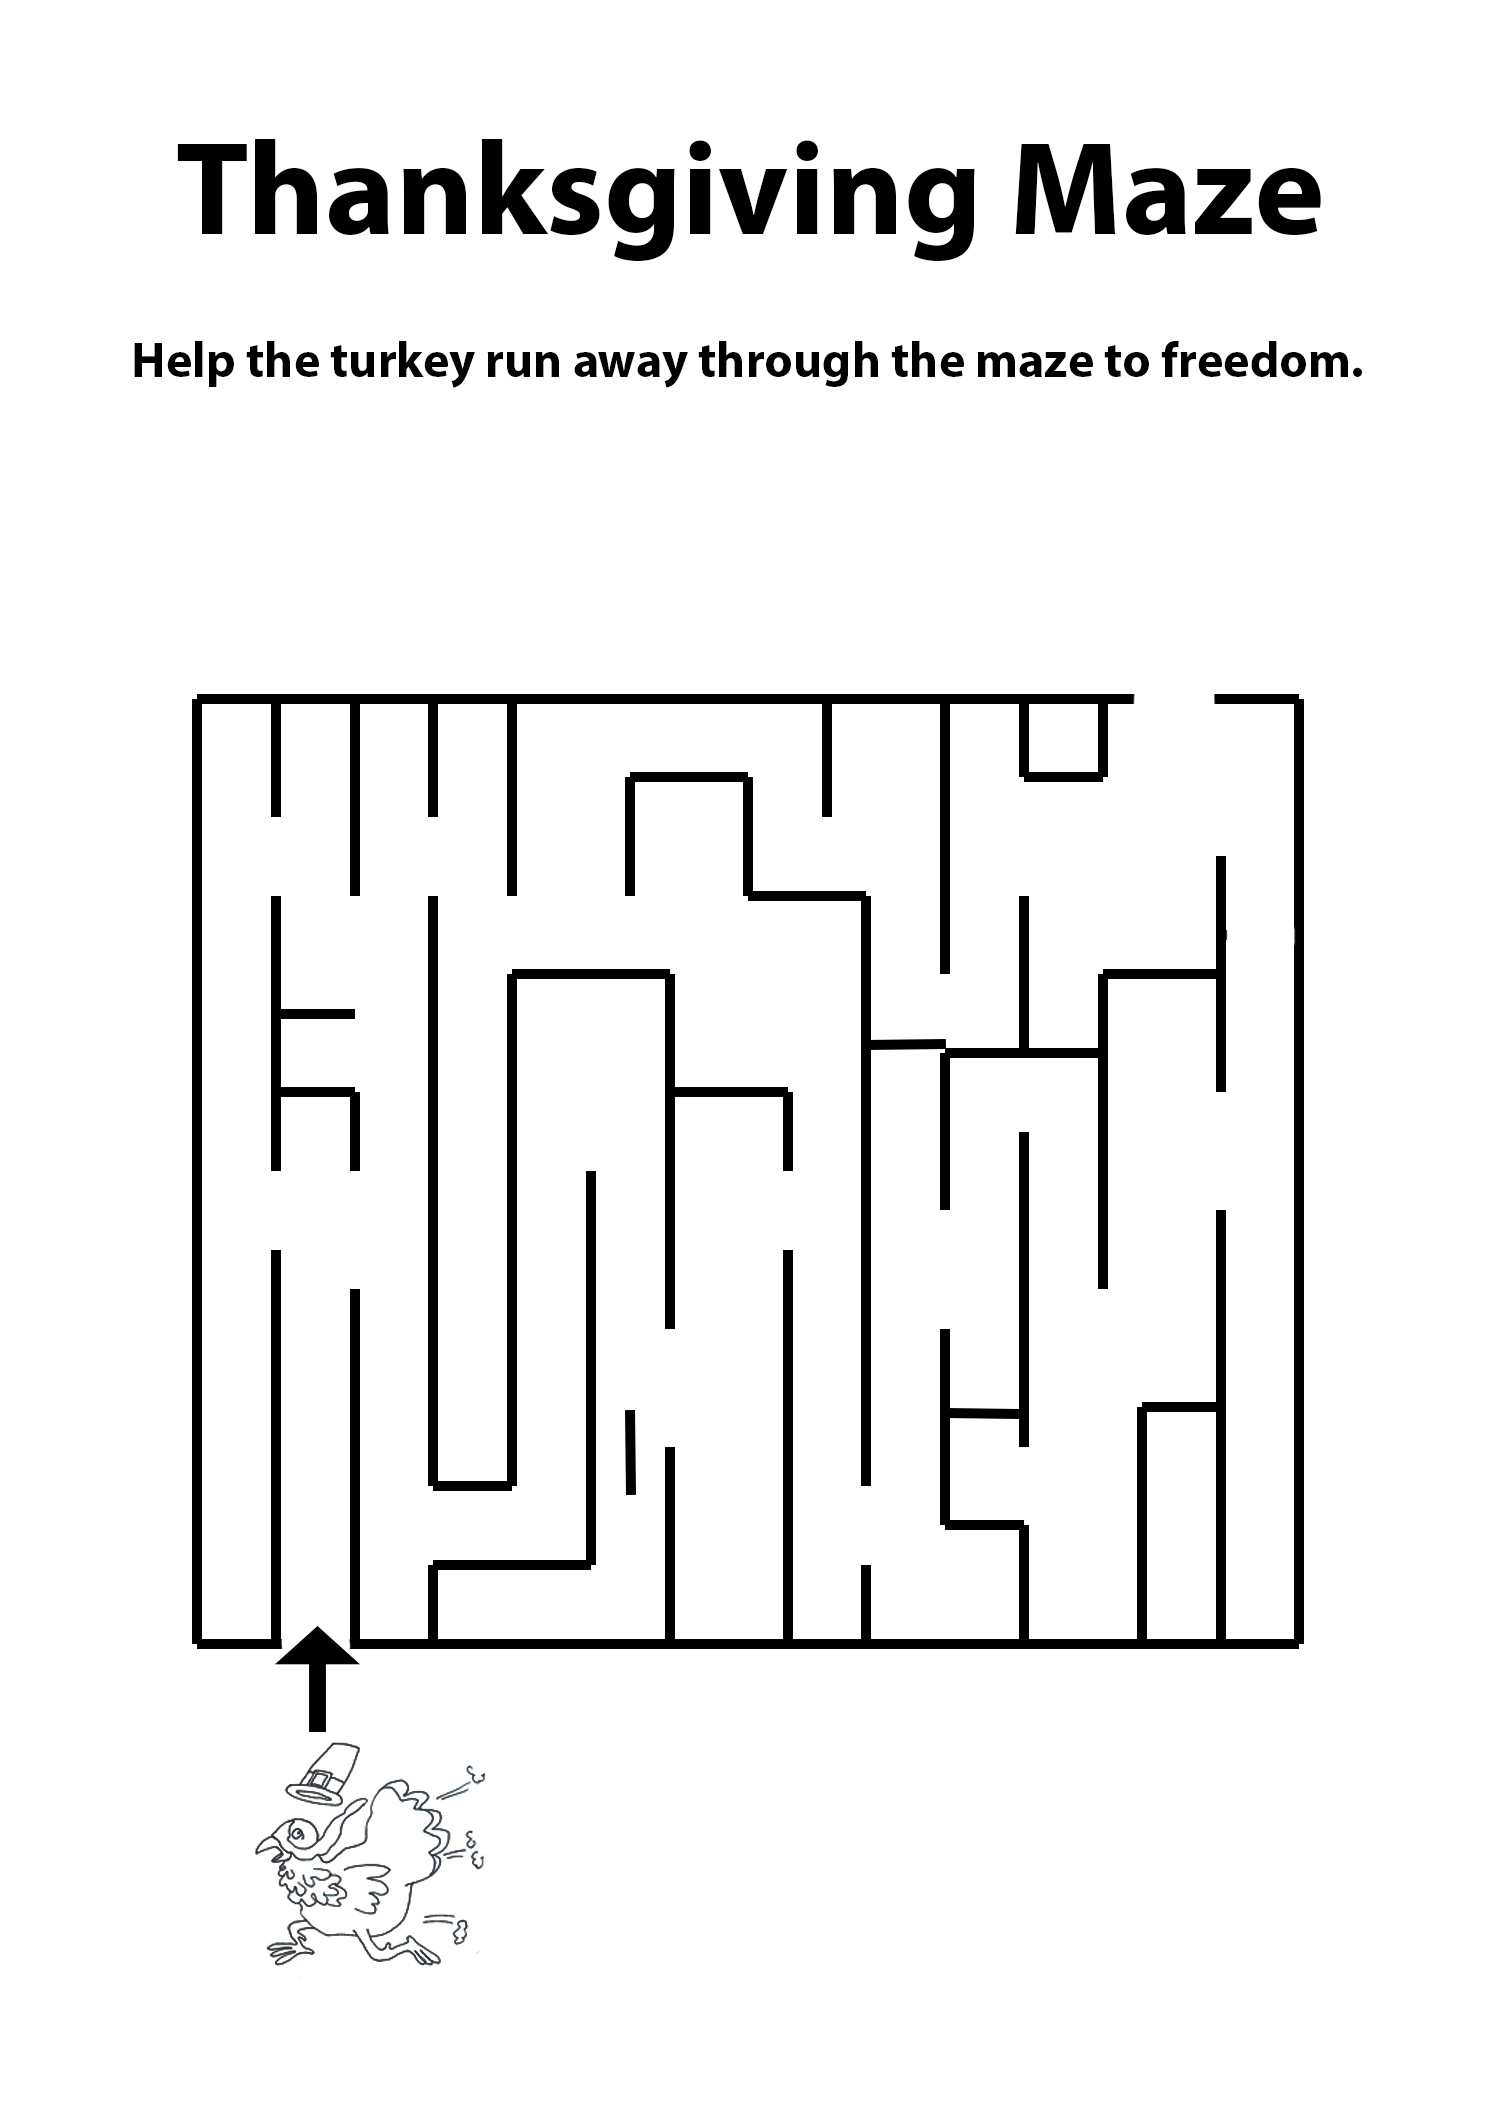 Thanksgiving maze help the turkey bird